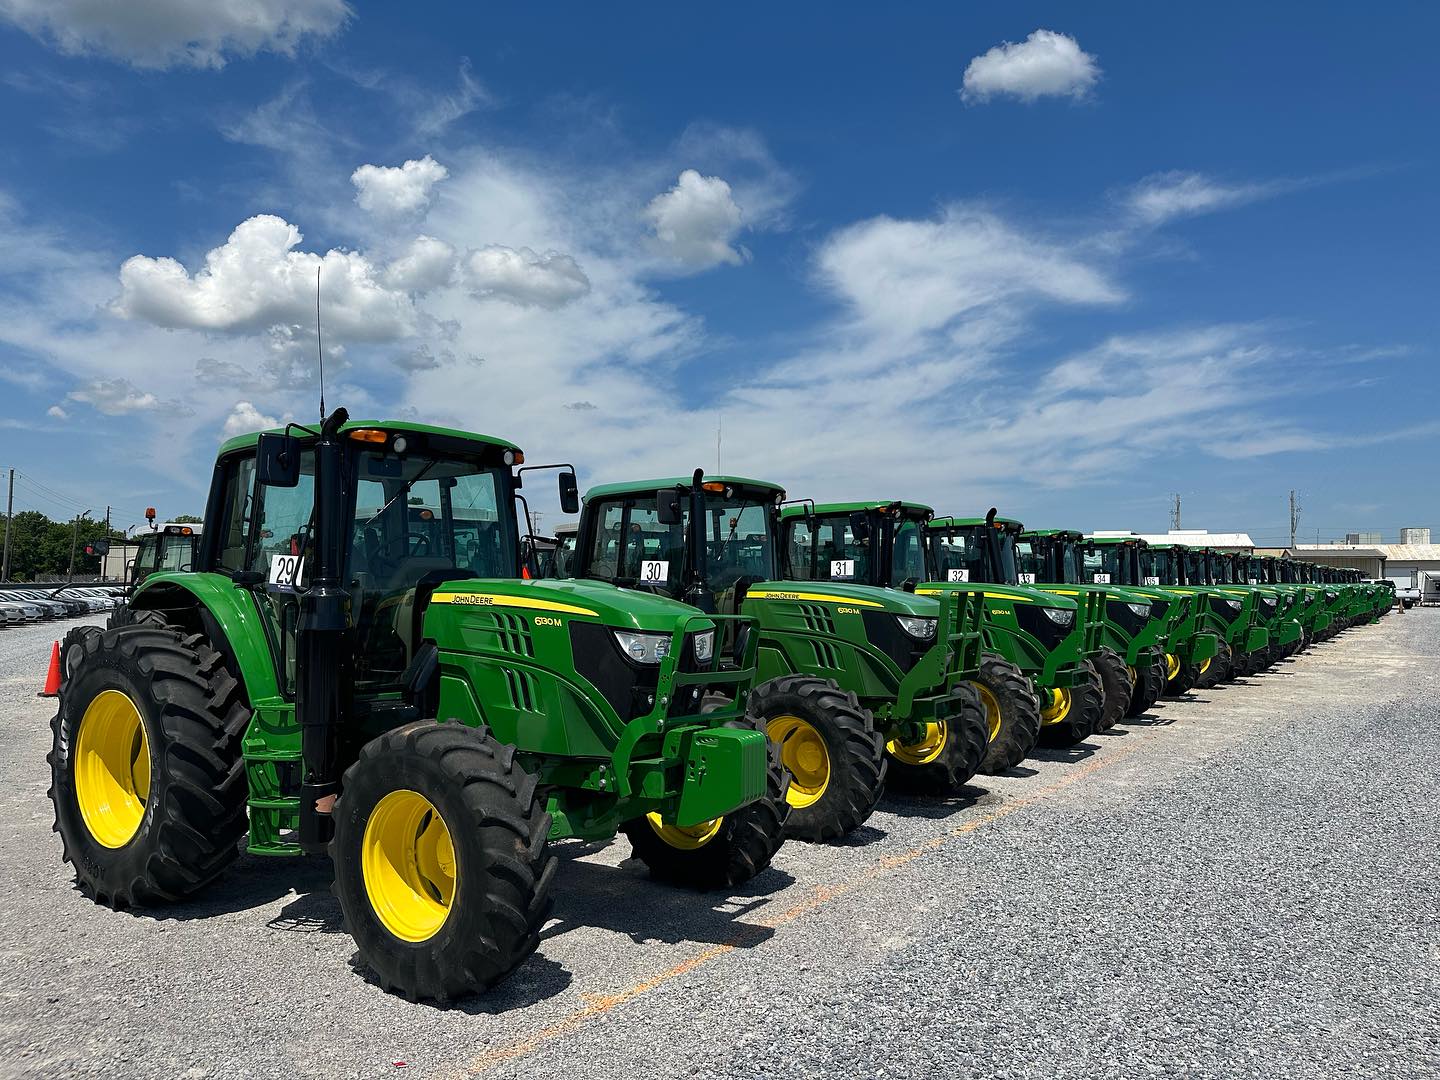 A line of green tractors